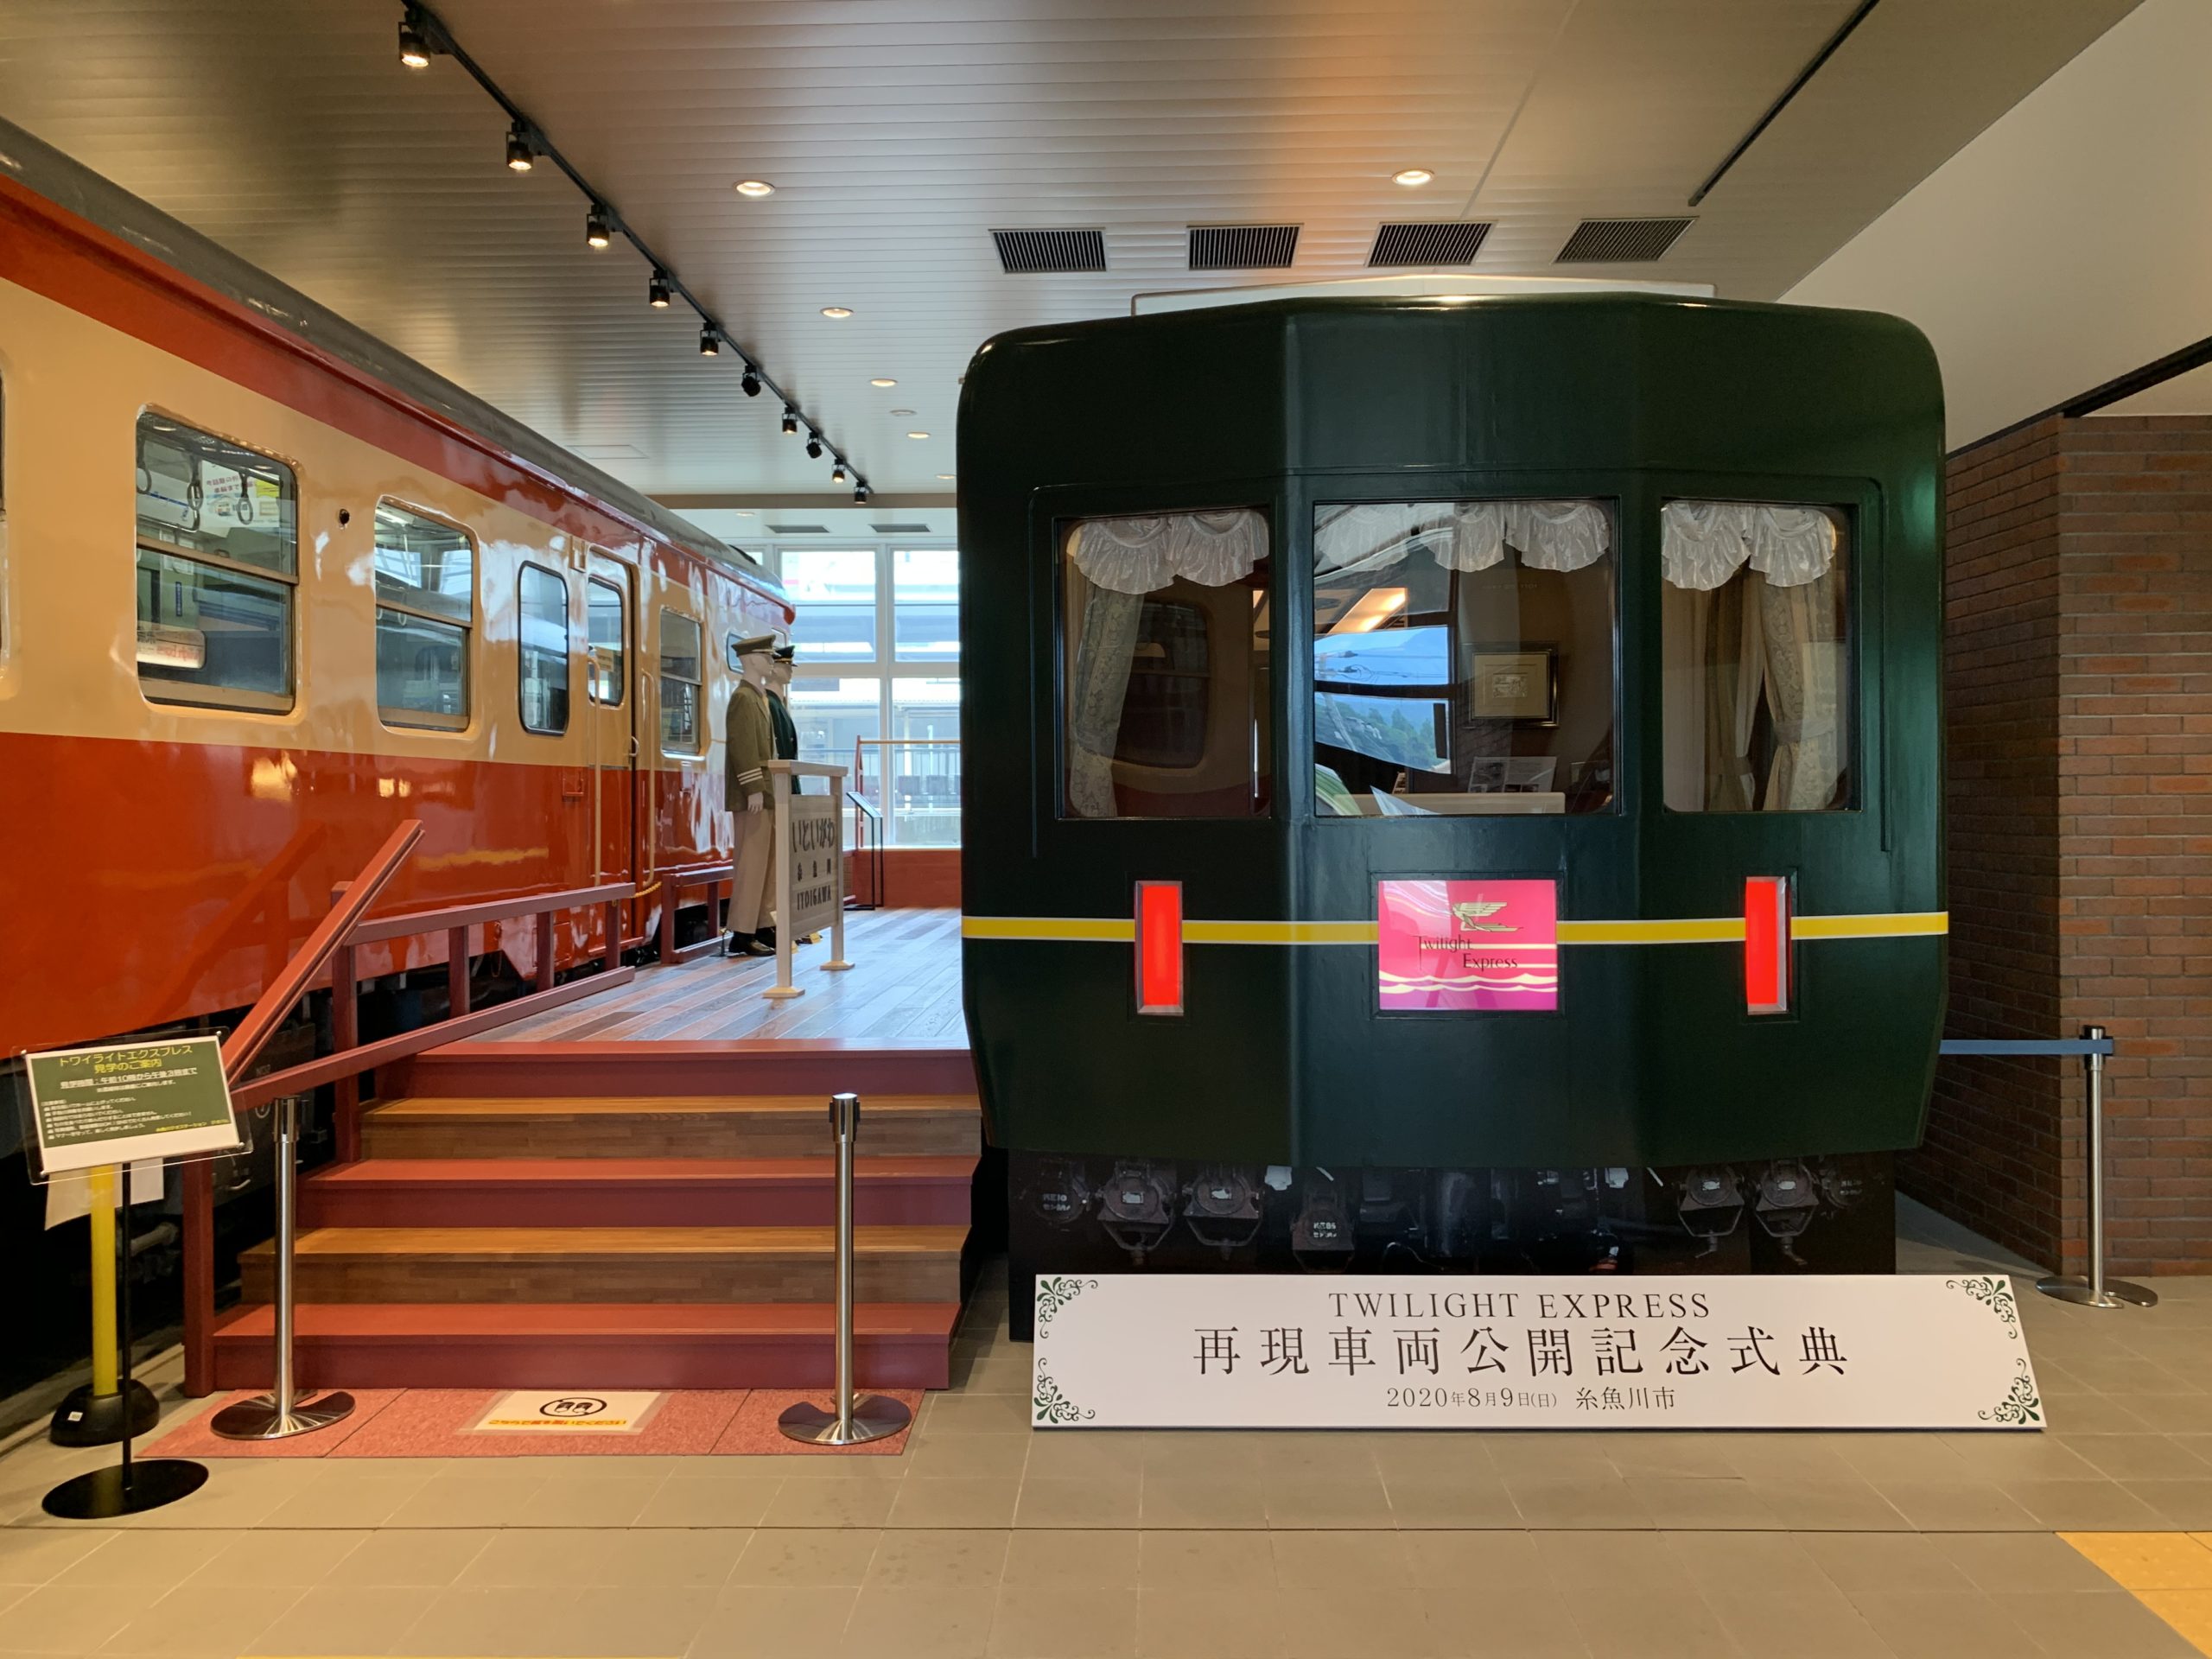 トワイライトエクスプレス再現車両の一般公開が開始しました 新着おしらせ 北陸新幹線で行く糸魚川